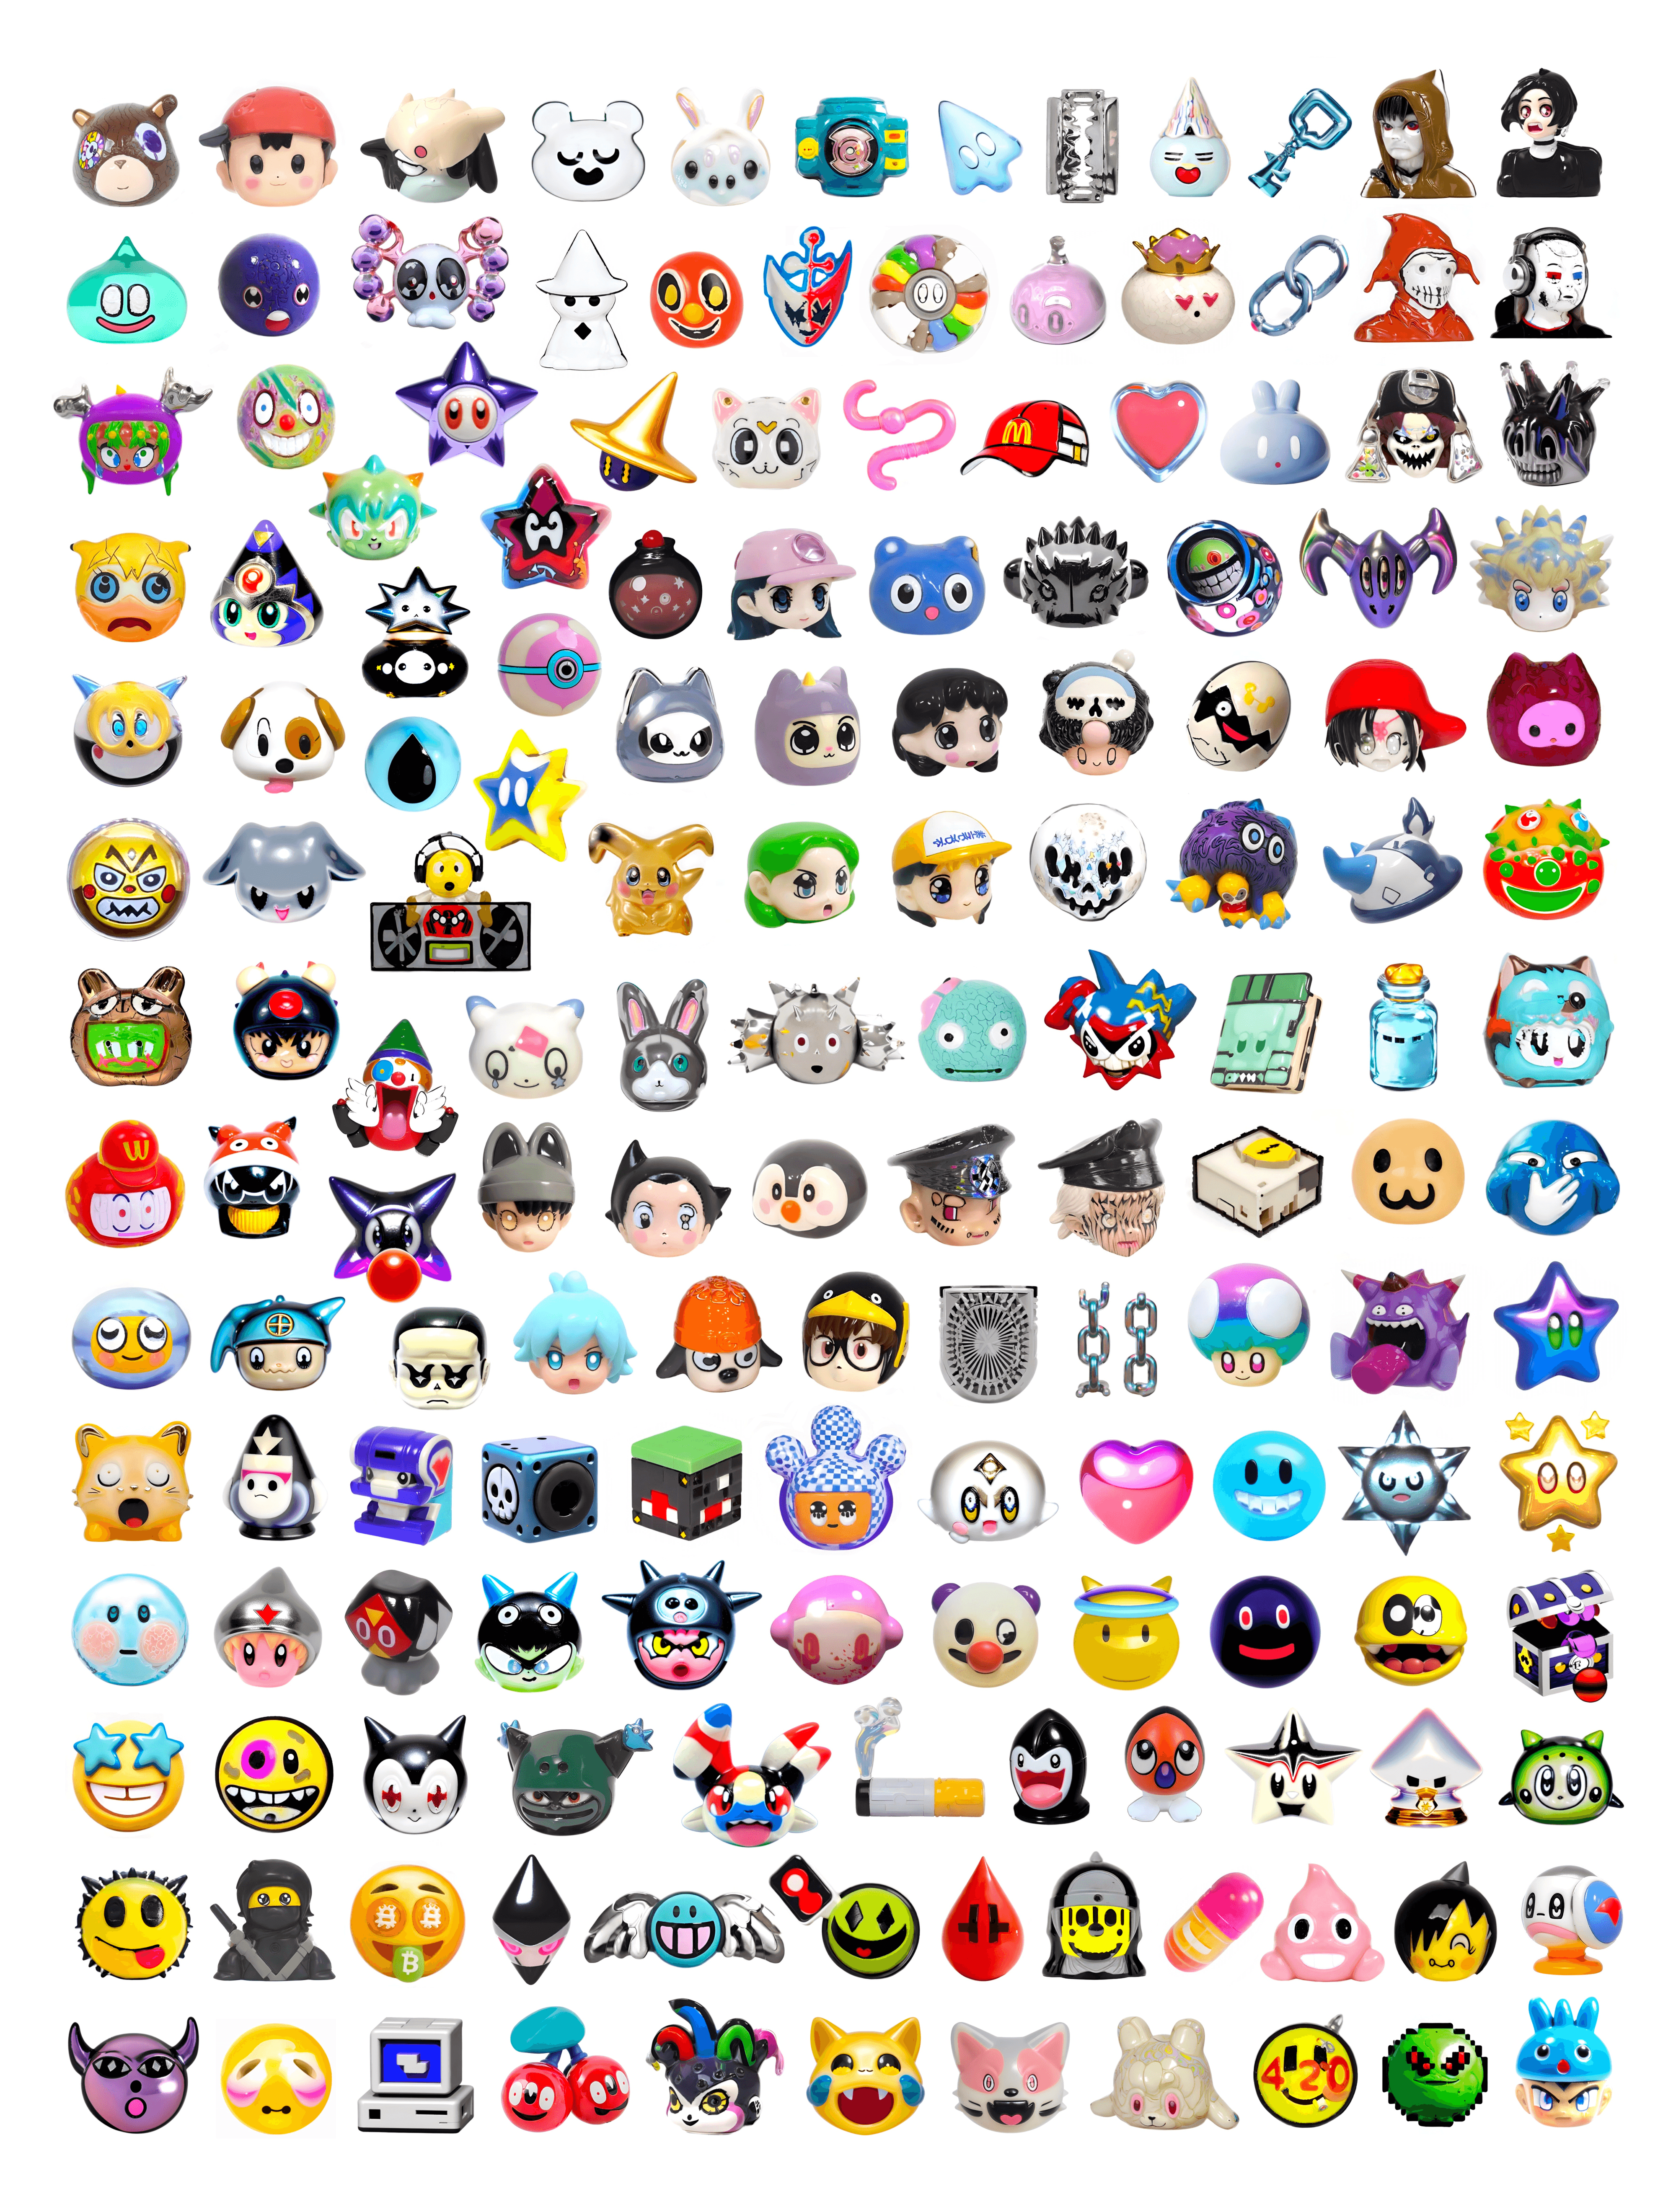 The Emoji Pack